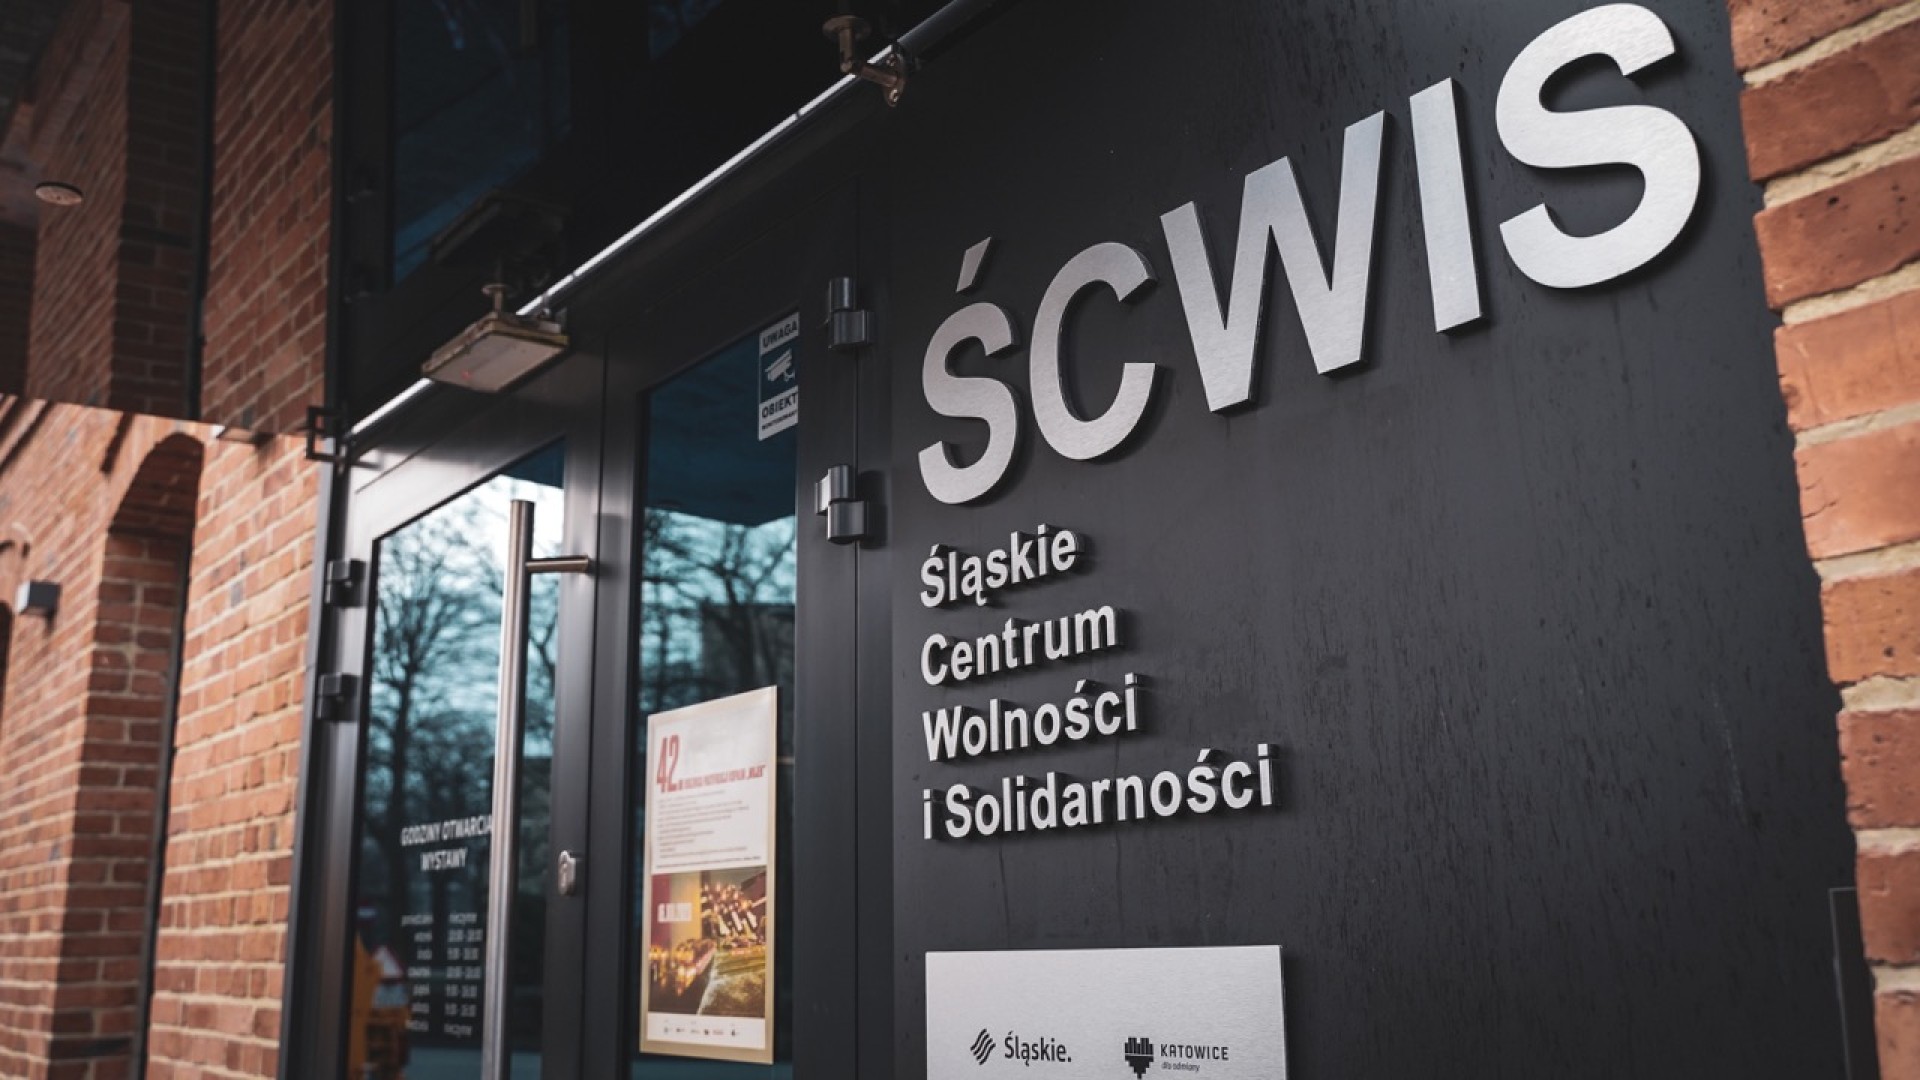 Wejście do Śląskiego Centrum Wolności i Solidarności w Katowicach